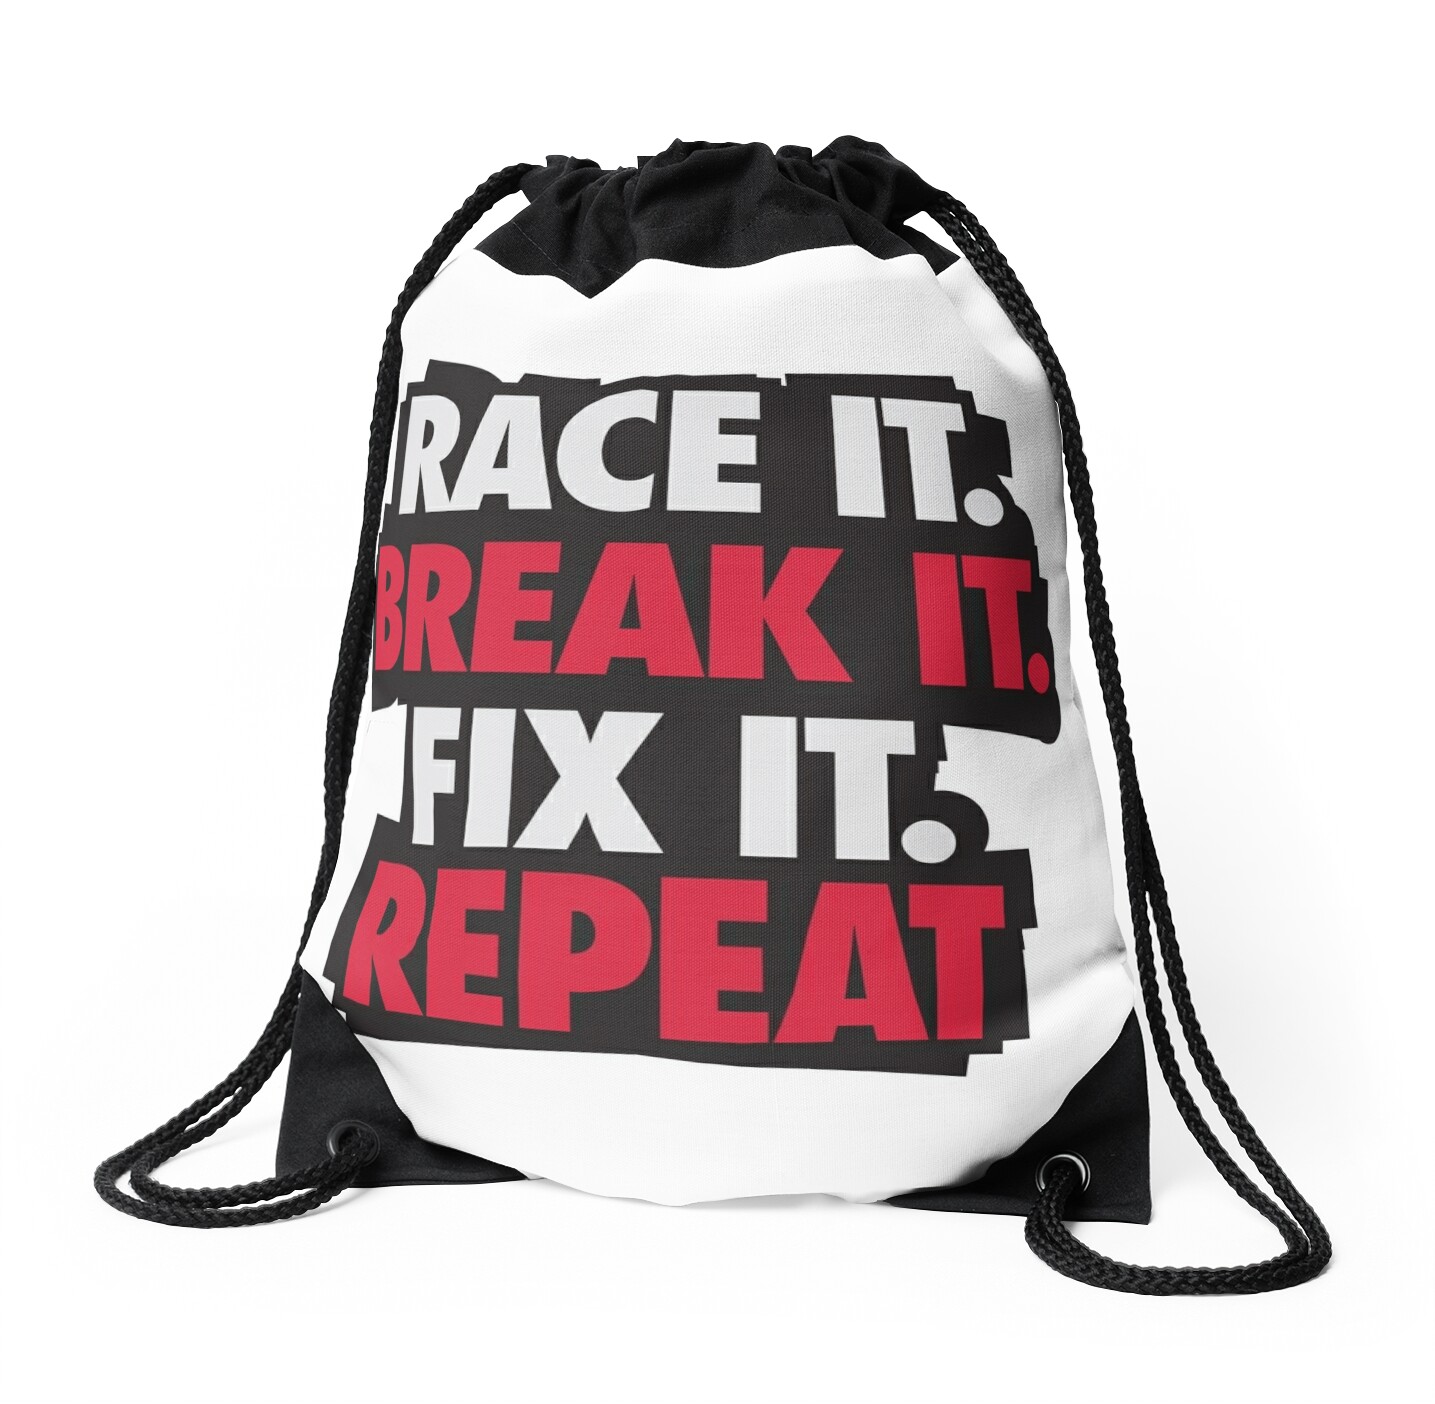 Race it. Break it. Fix it. REPEAT